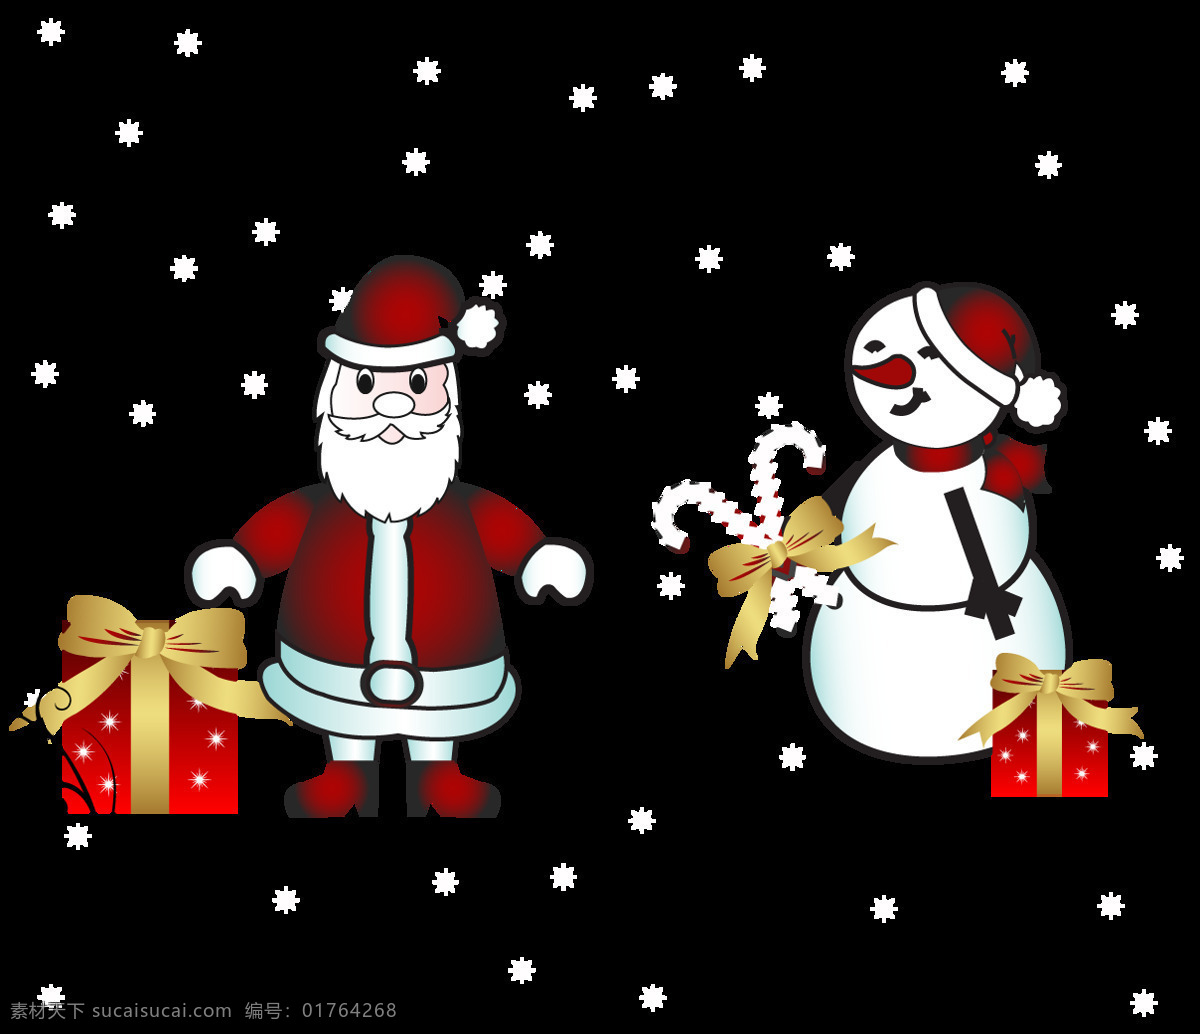 简约 圣诞 雪人 装饰 元素 节日装饰 卡通圣诞元素 圣诞png 圣诞节 圣诞节装饰 圣诞老人 圣诞礼物 圣诞免抠元素 圣诞素材 圣诞雪人 圣诞元素下载